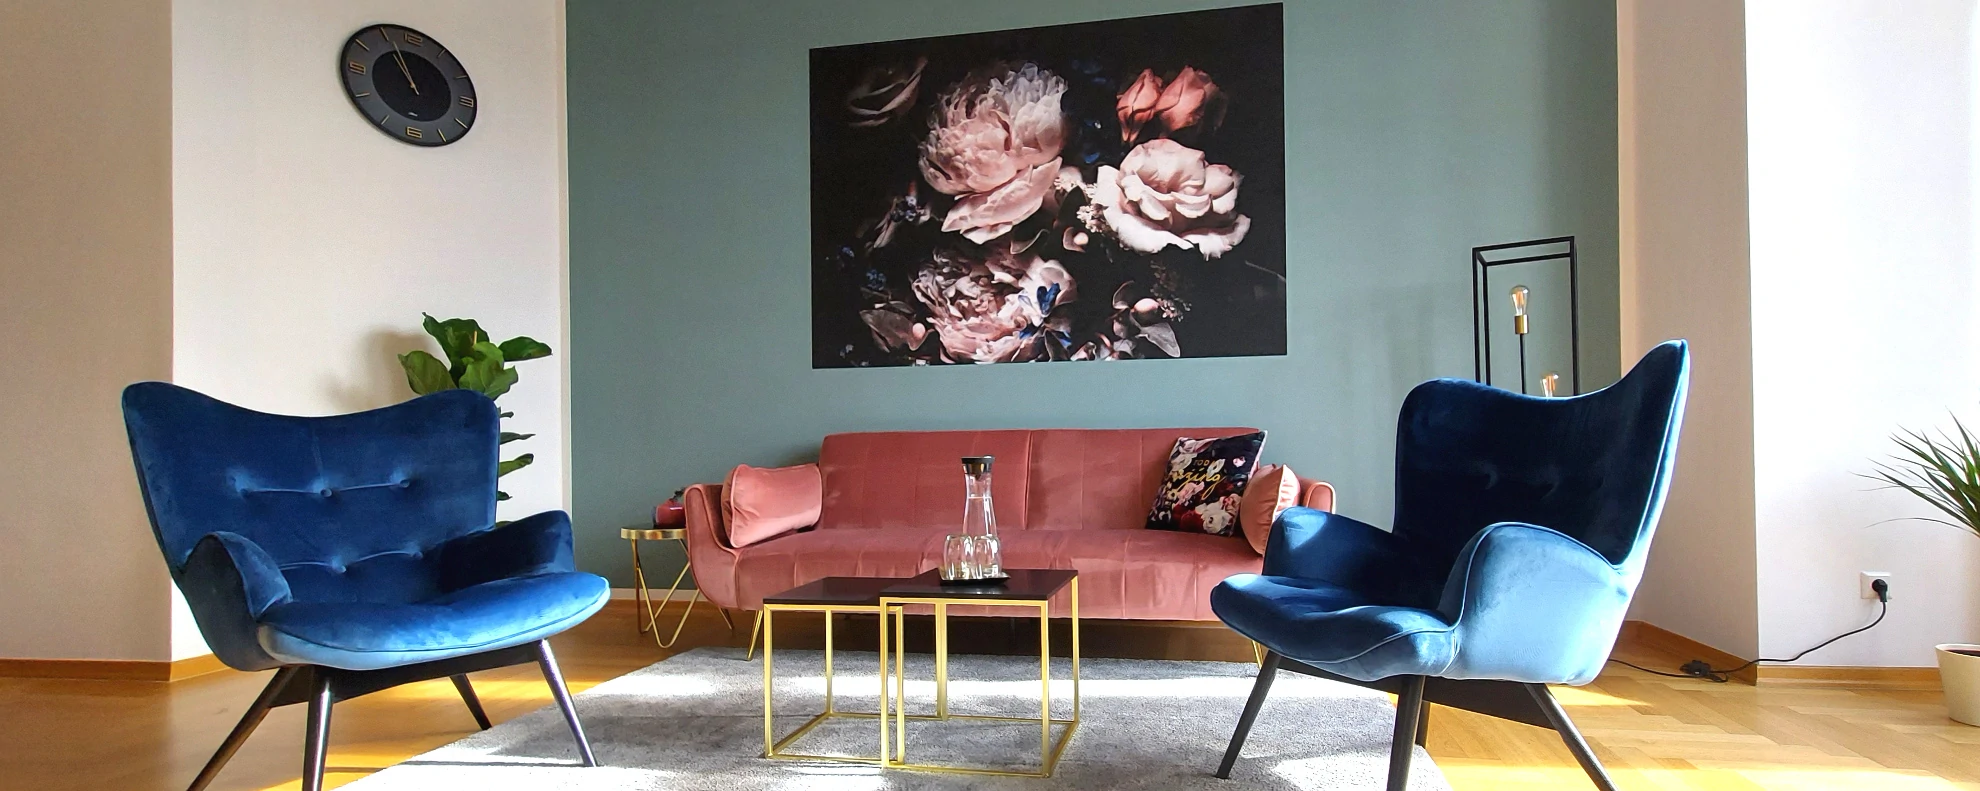 Impressionen aus den Praxisräumen: 2 blaue Sessel und ein Sofa vor einer dekorierten Wand